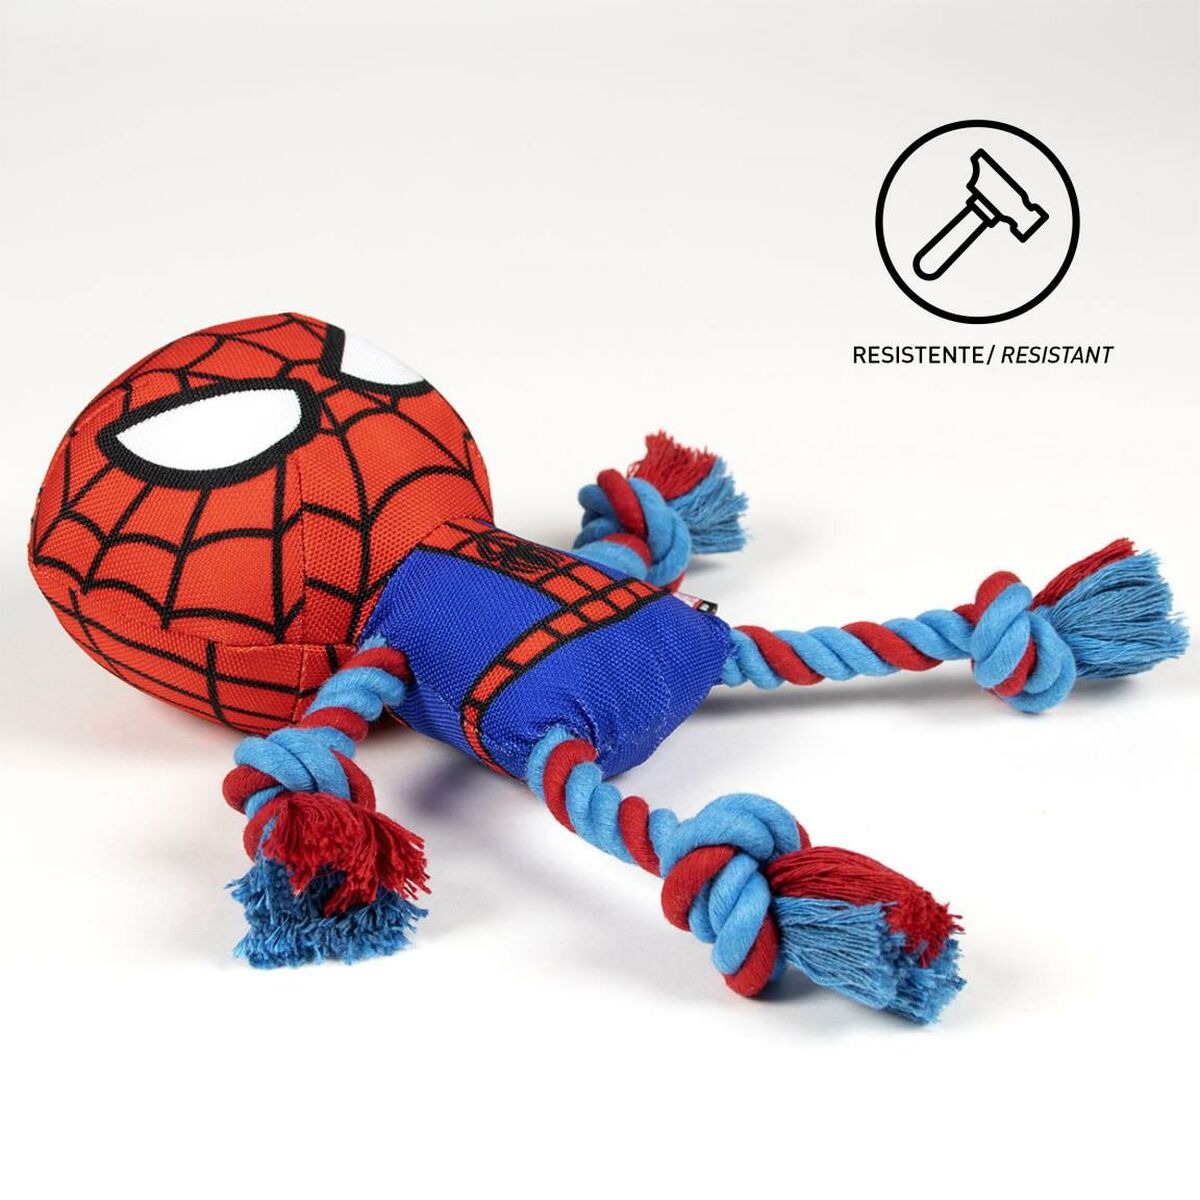 Dog toy Spider-Man Red